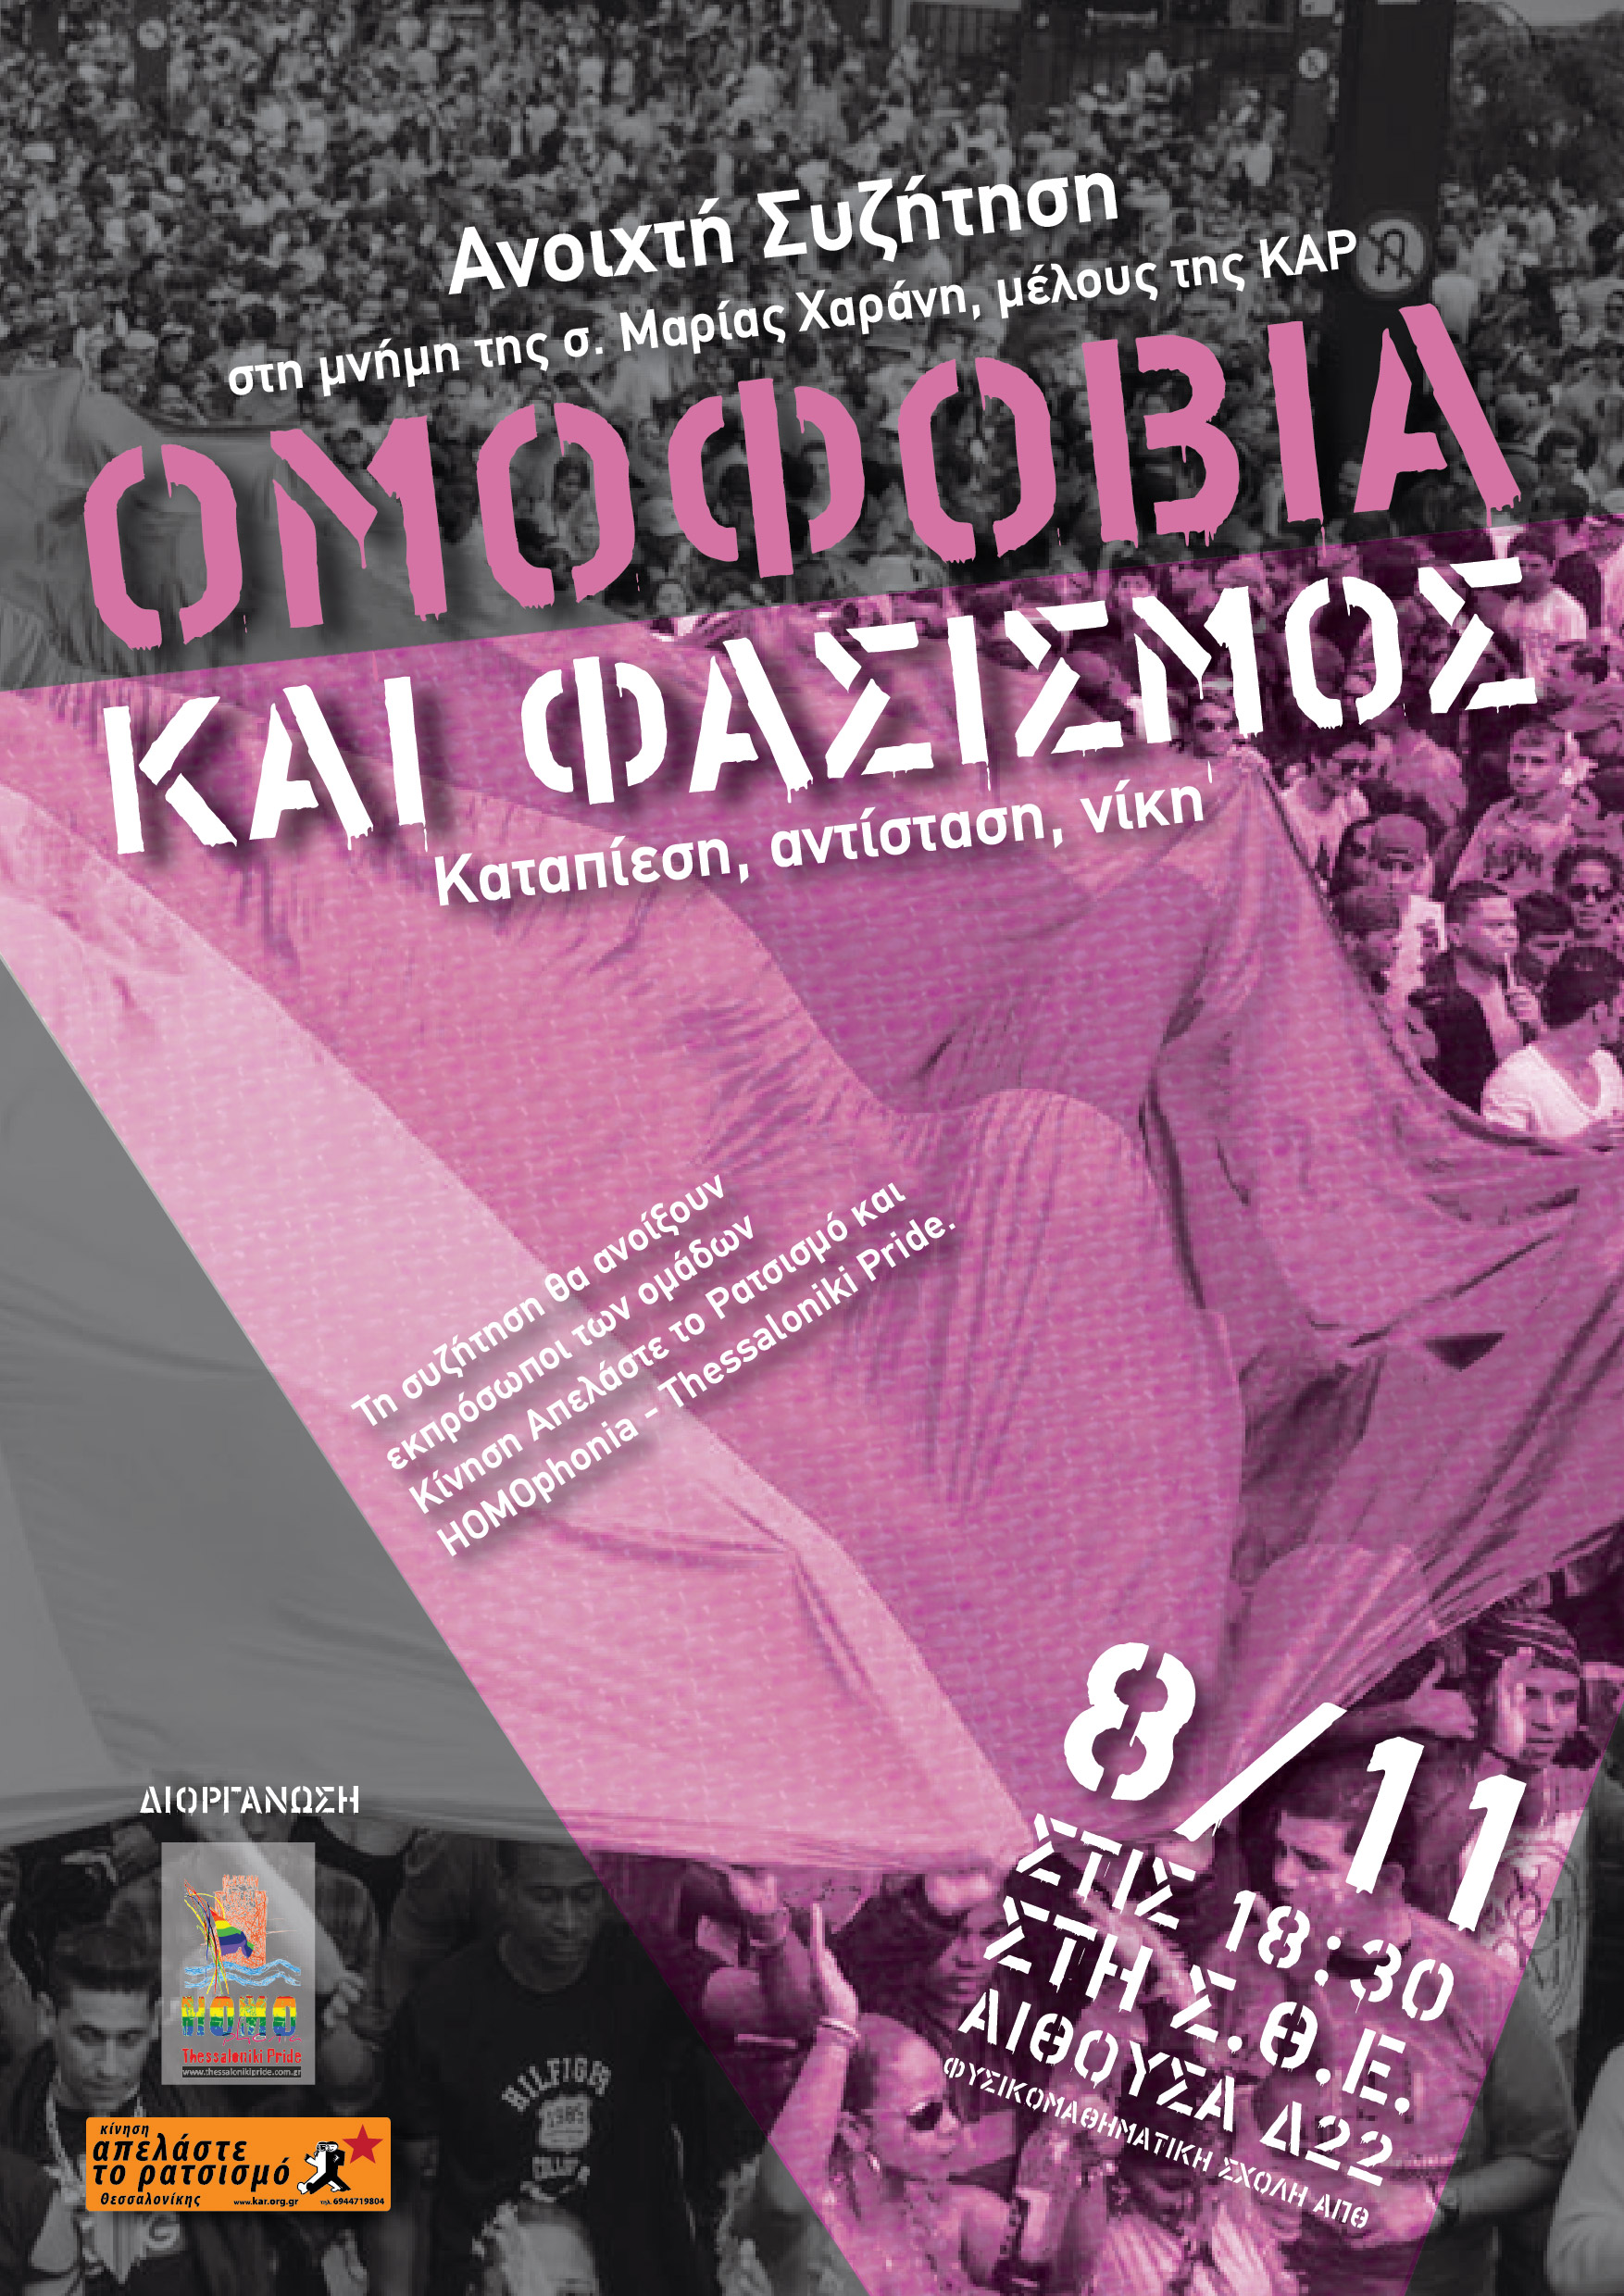 Ανοιχτή εκδήλωση με θέμα “Ομοφοβία και Φασισμός”